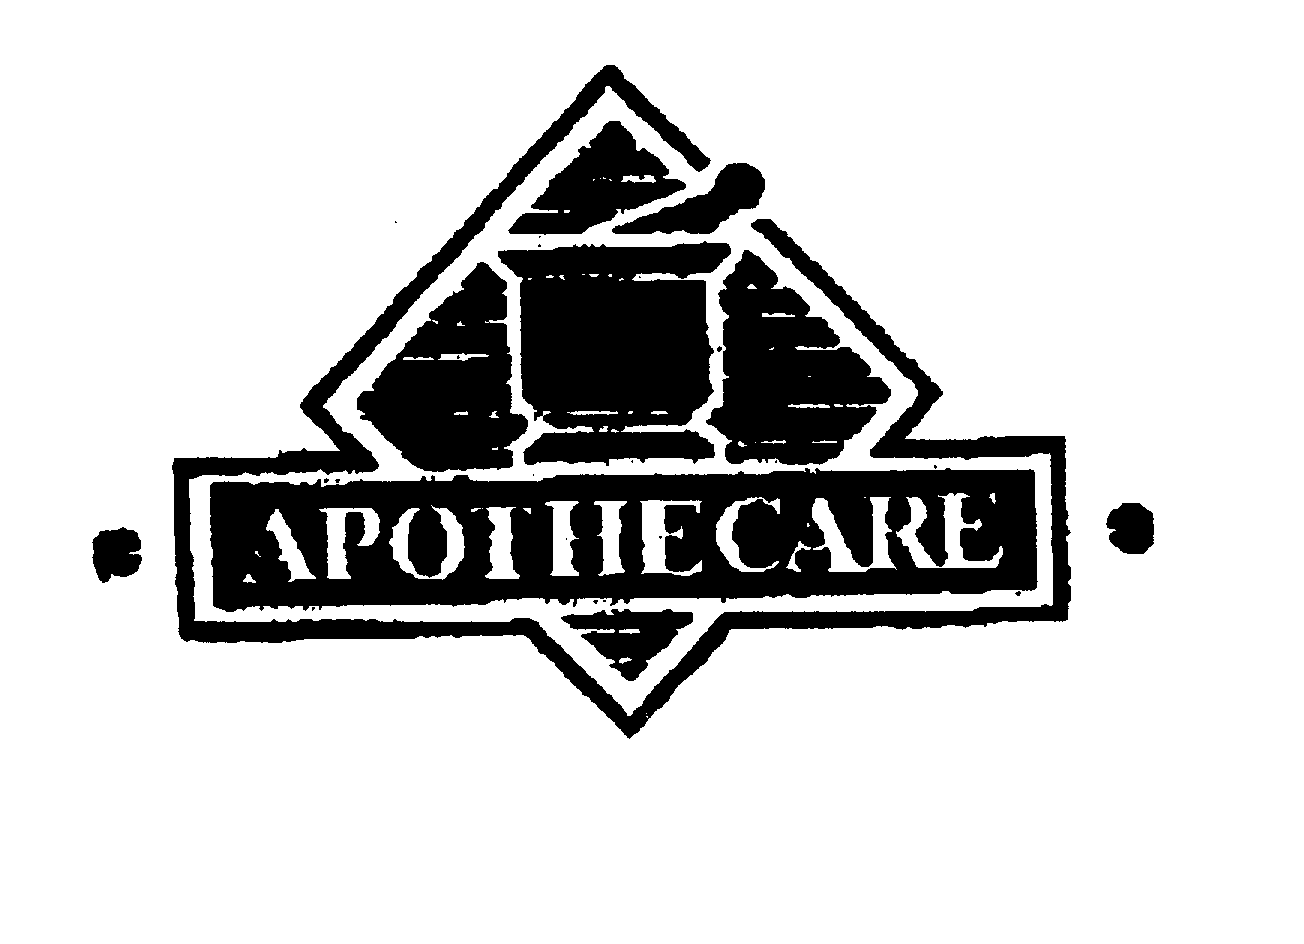 Trademark Logo APOTHECARE